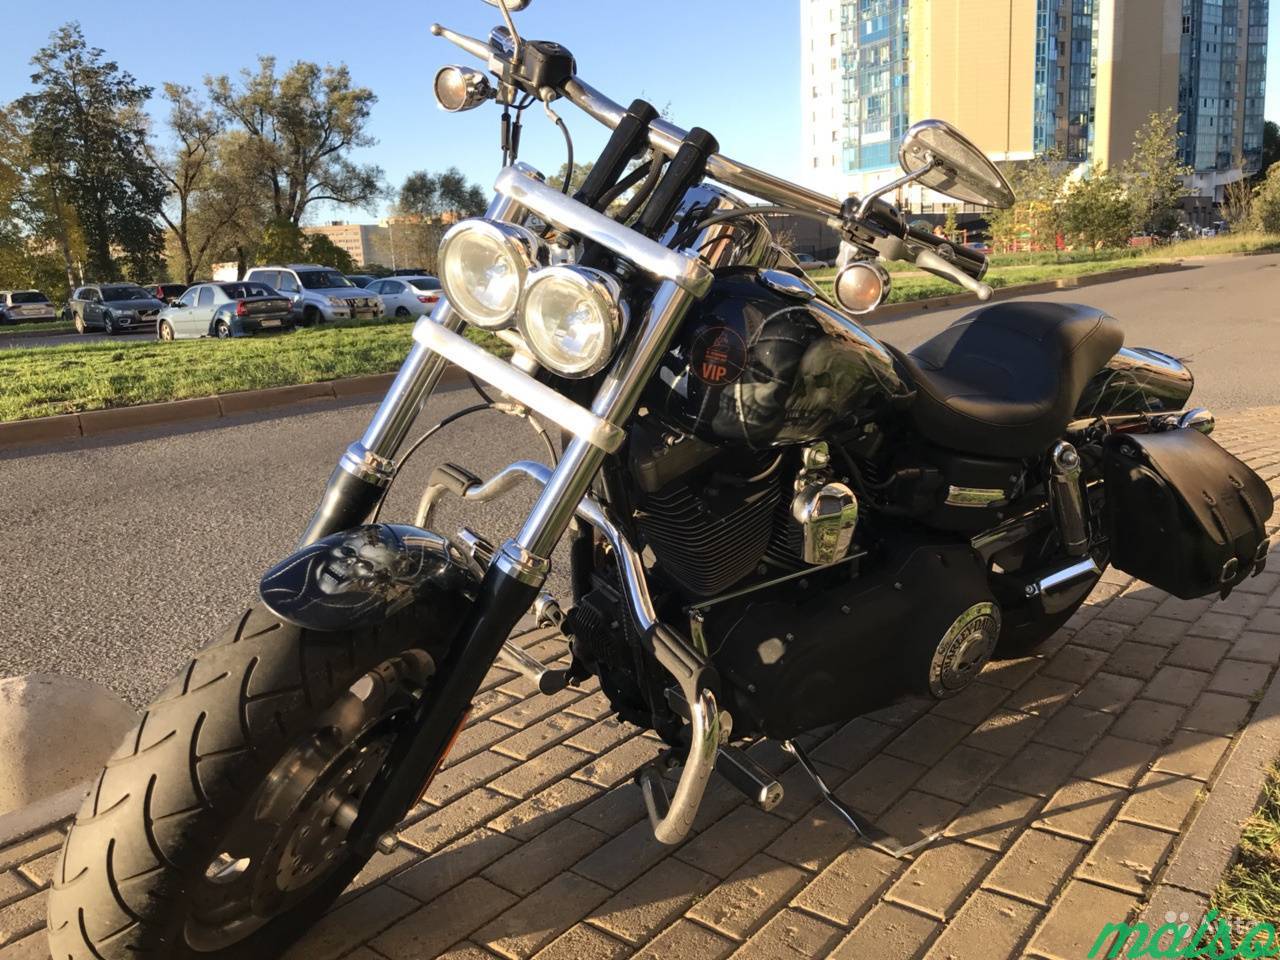 Harley Davidson Fatbob в Санкт-Петербурге. Фото 1